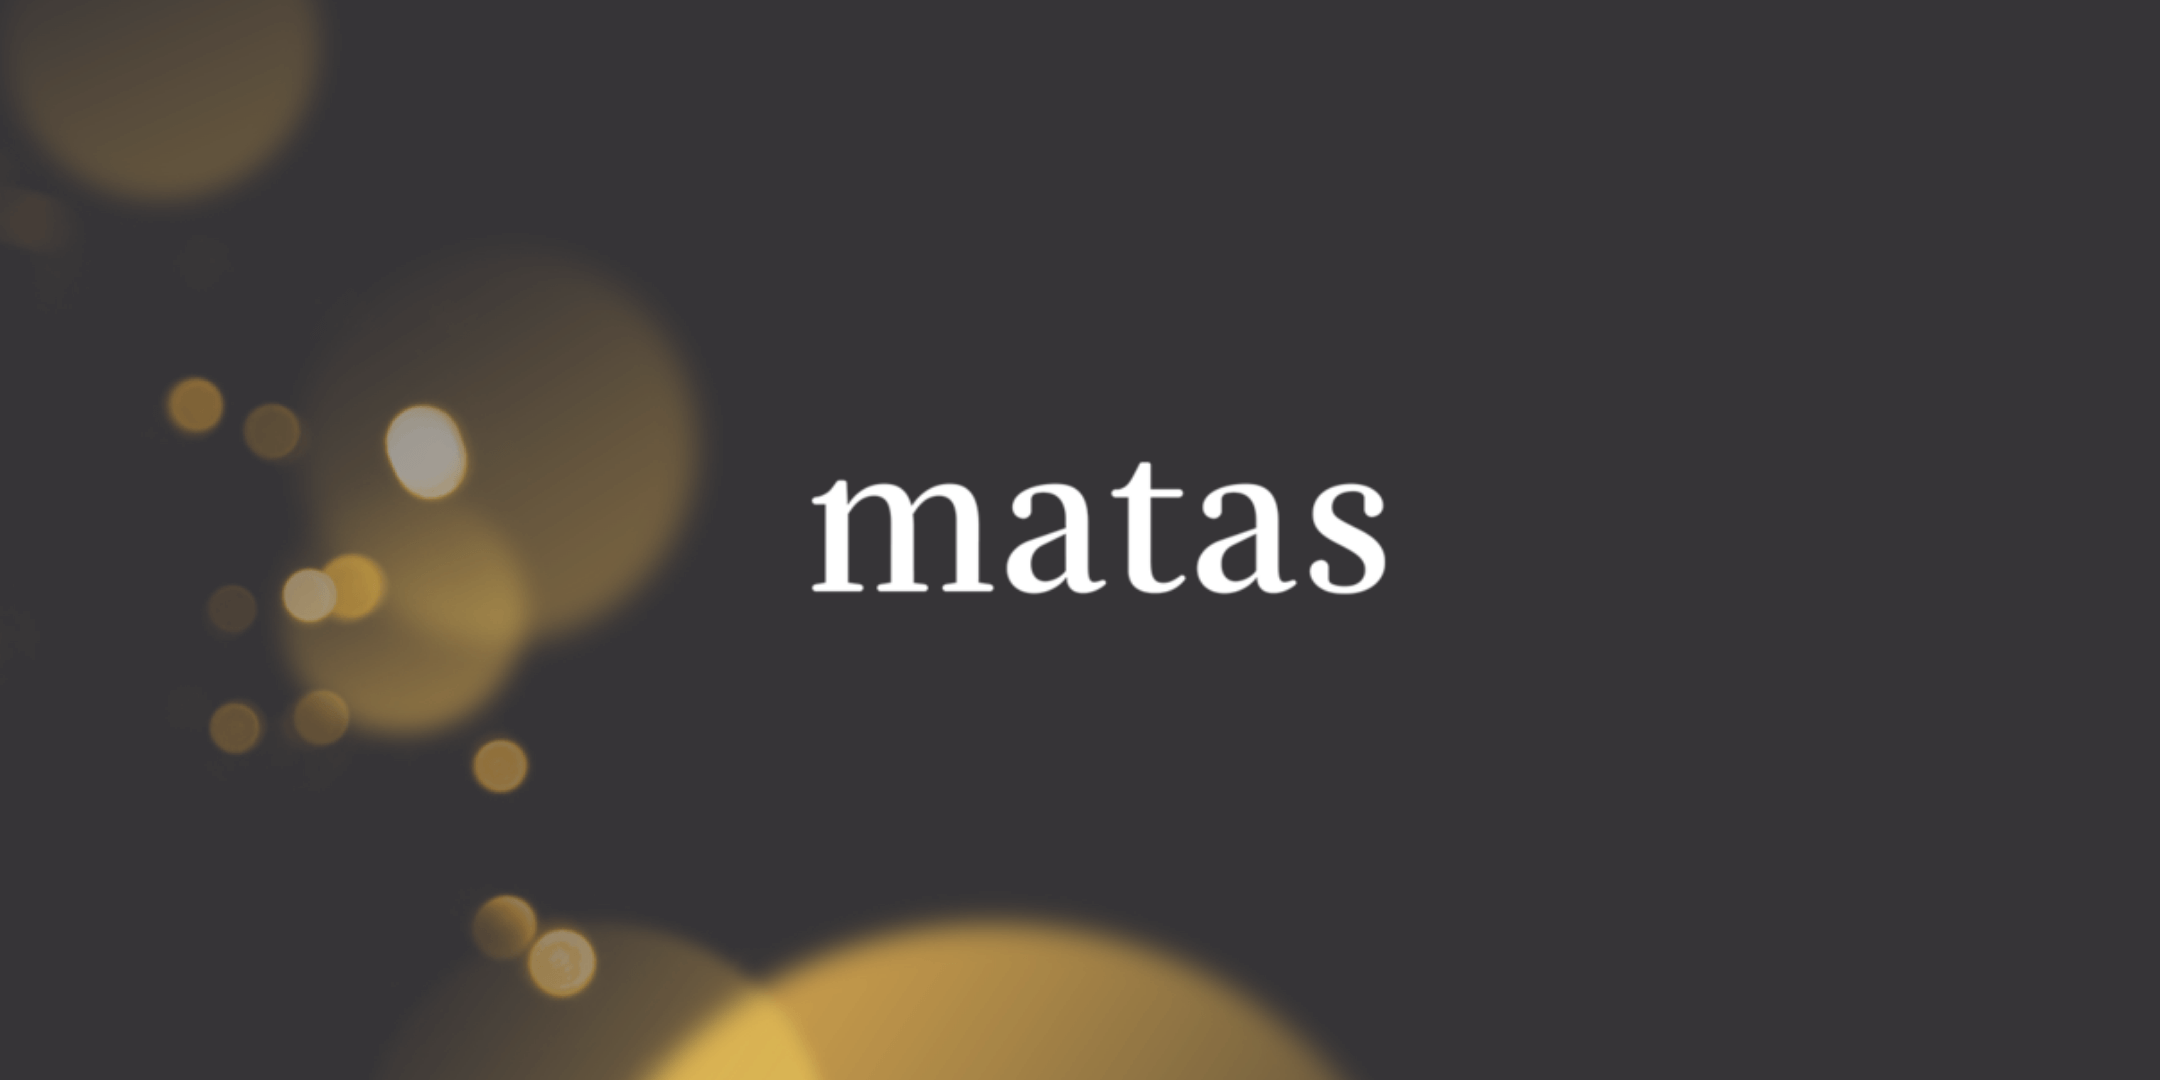 Matas oplevede eksplosion i onlinehandlen under Corona